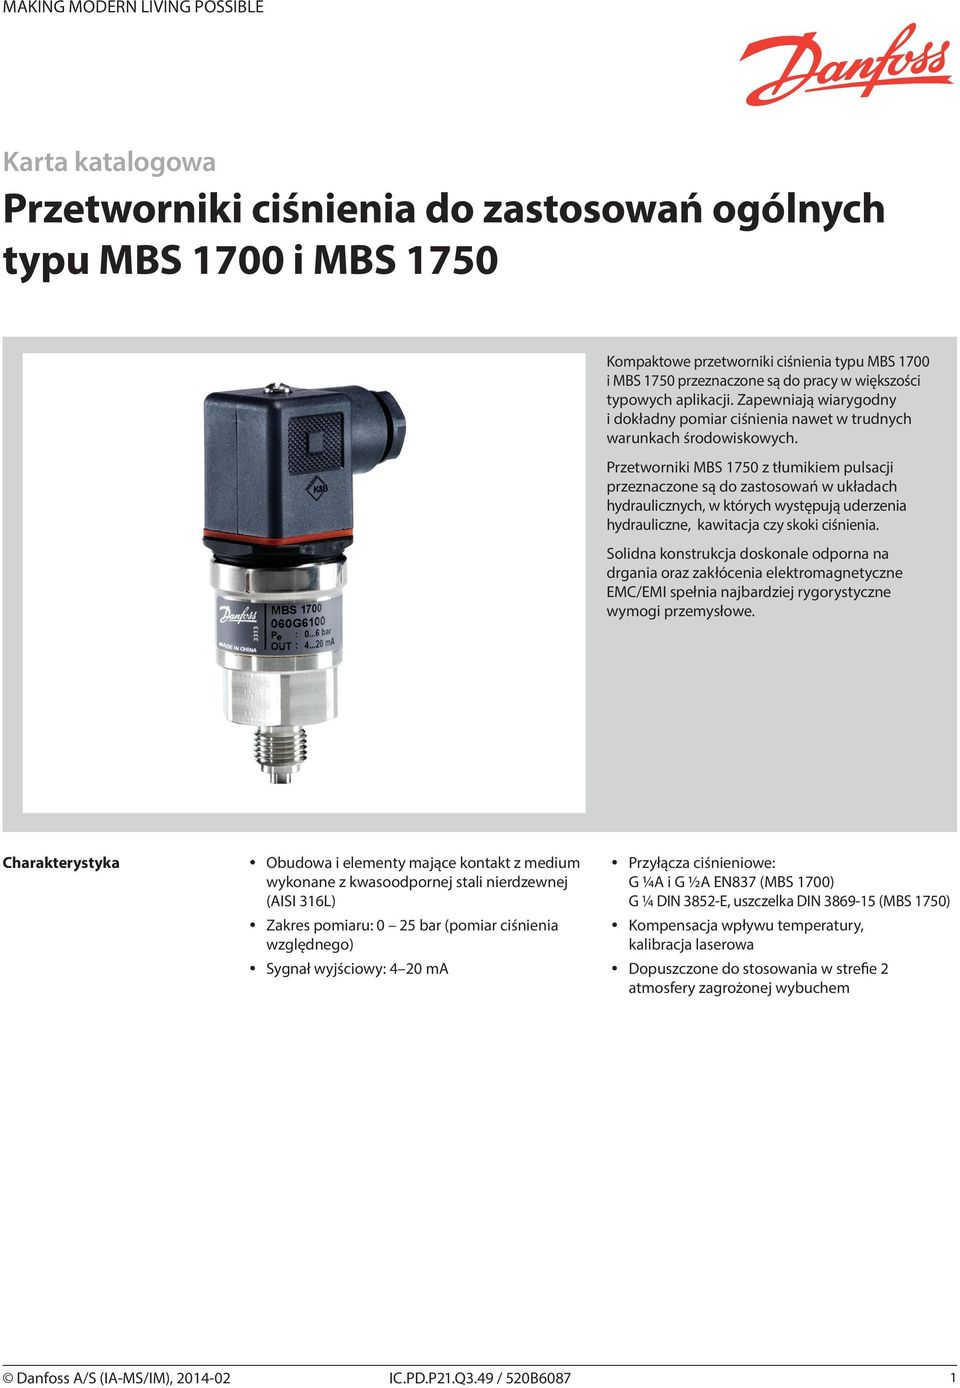 Przetworniki MBS 1750 z tłumikiem pulsacji przeznaczone są do zastosowań w układach hydraulicznych, w których występują uderzenia hydrauliczne, kawitacja czy skoki ciśnienia.